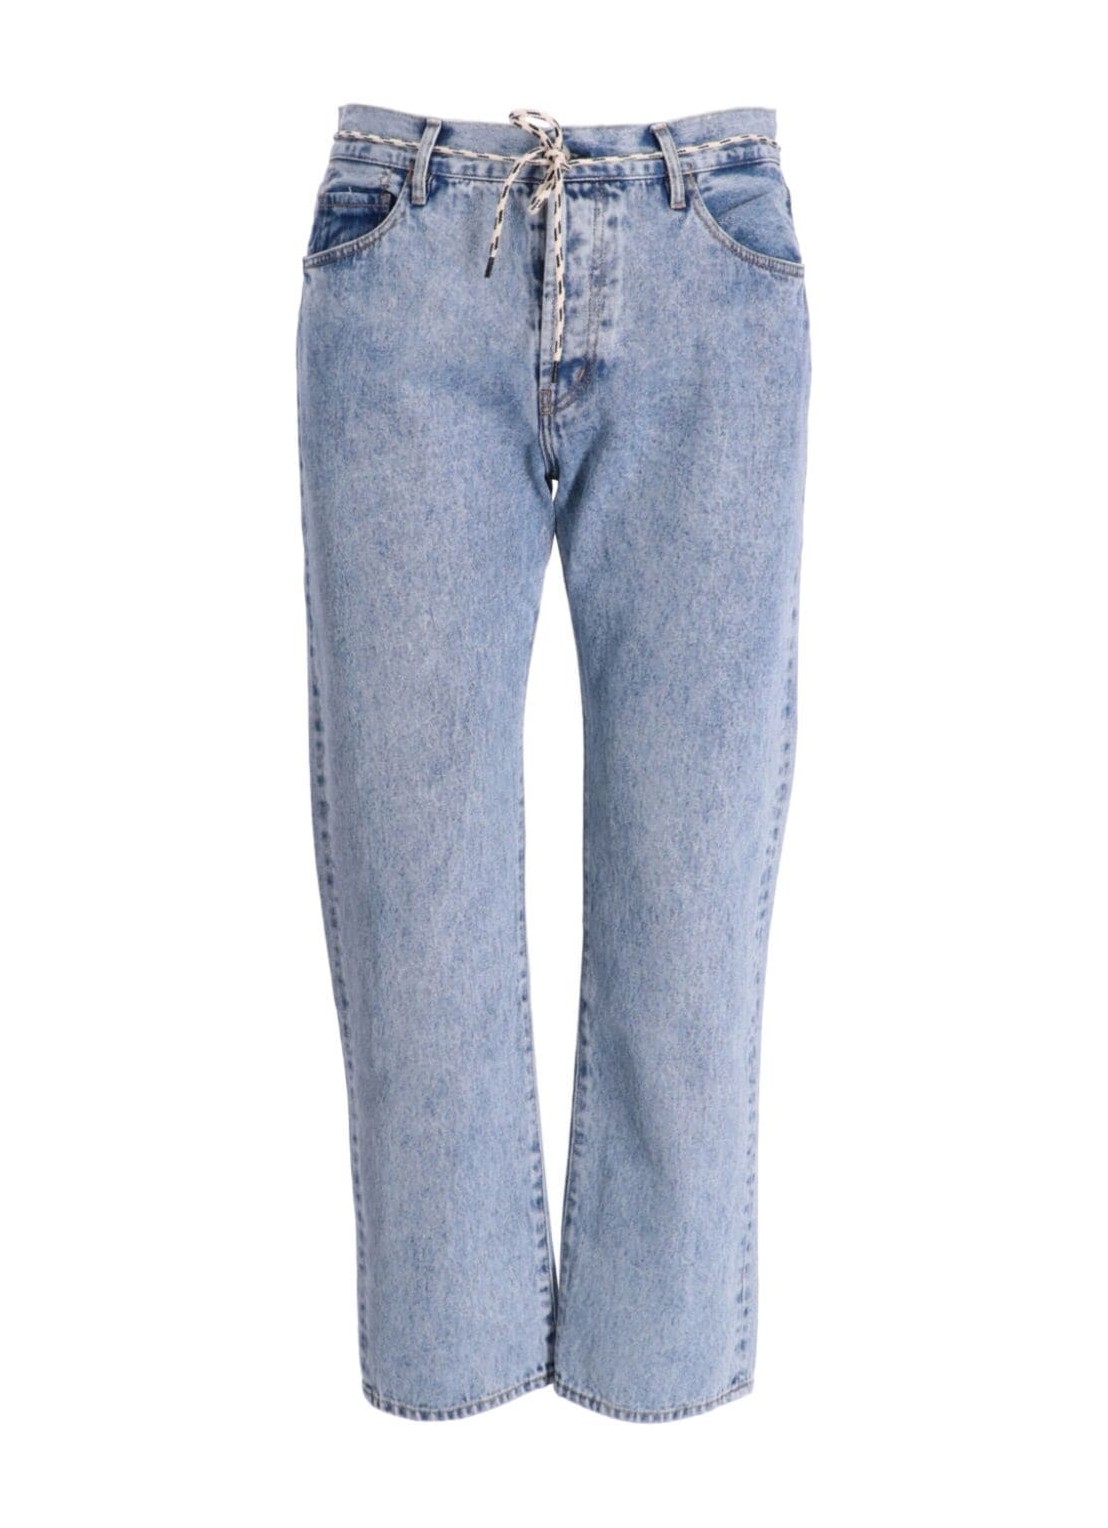 Pantalon jeans aries denim man acid wash lilly jeans ruar30111 blu talla 31
 